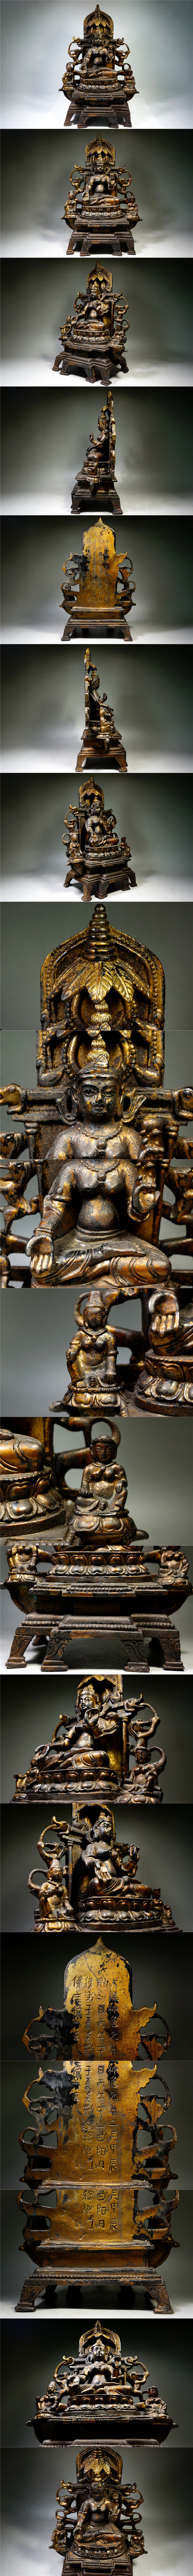 新作本物保証金銅細工 仏教 菩薩座像高彫 縁起置物 極上質 在銘 高さ29cm 重さ3.05kg 仏像